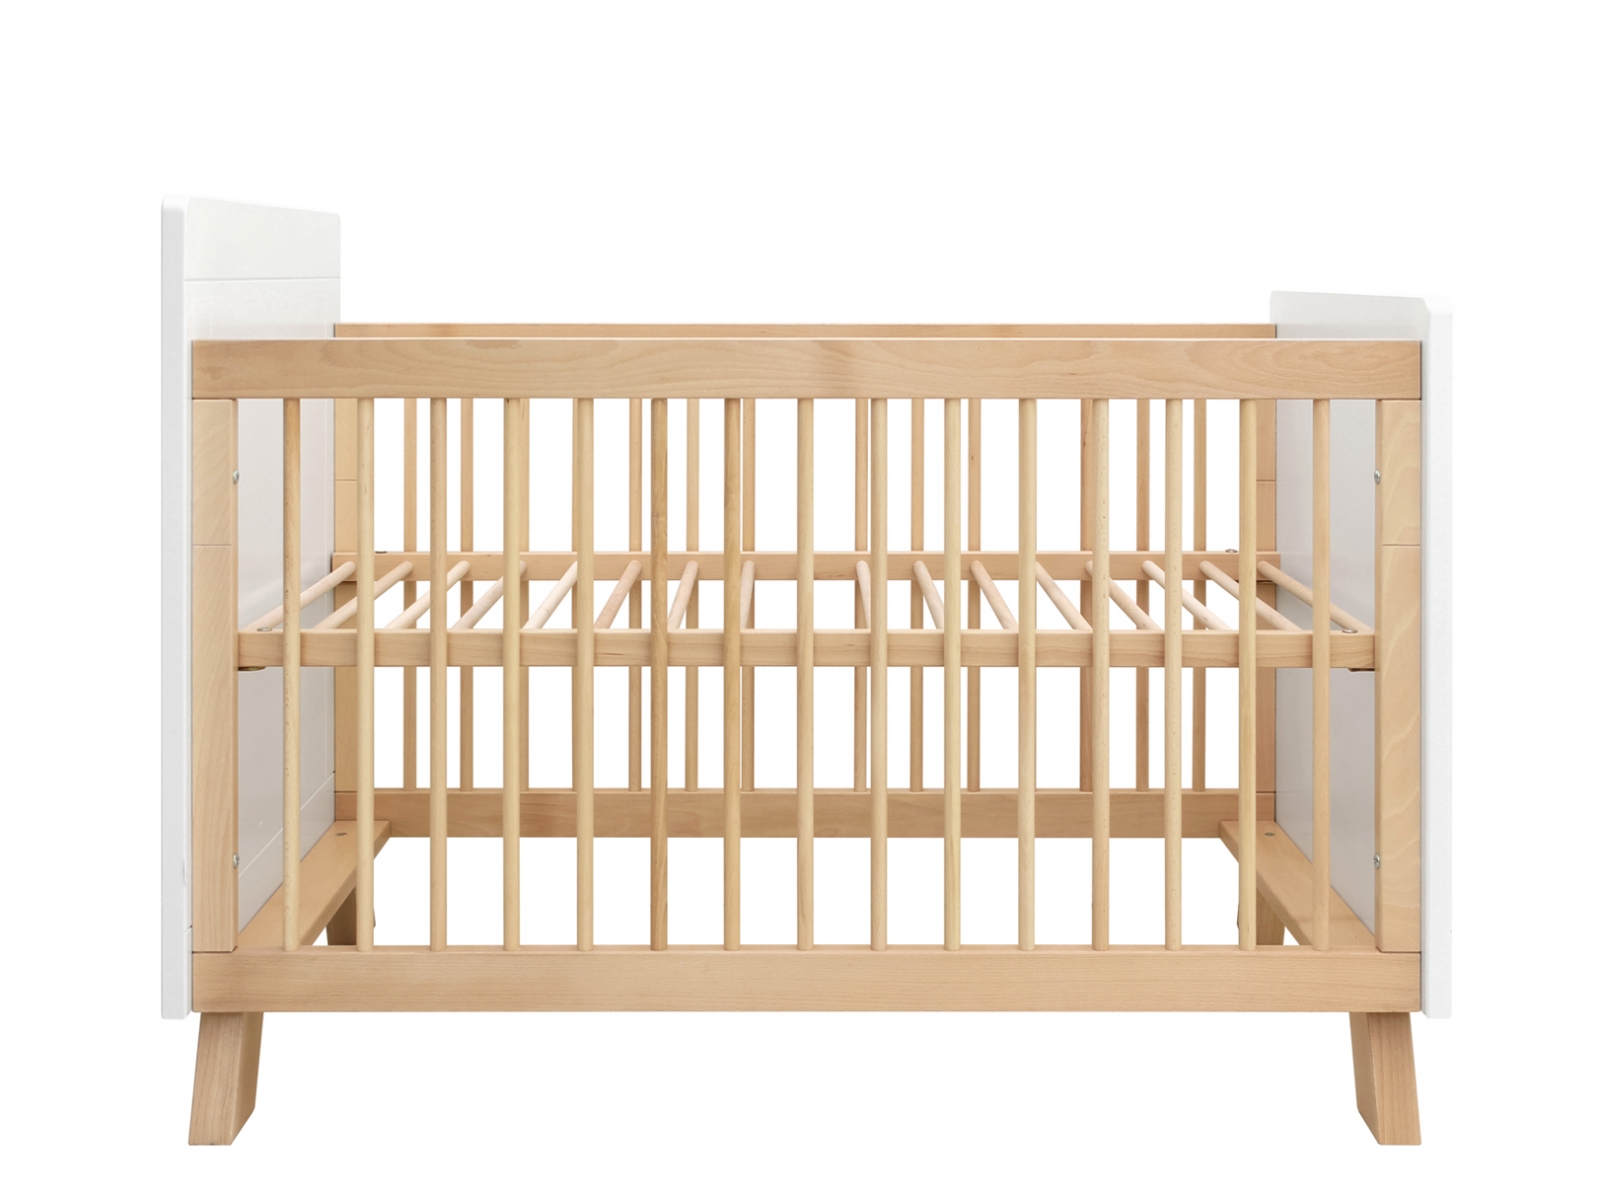 Varken Voorschrijven Regelen Order the Bopita Lisa Bed - 60x120 cm. online - Baby Plus